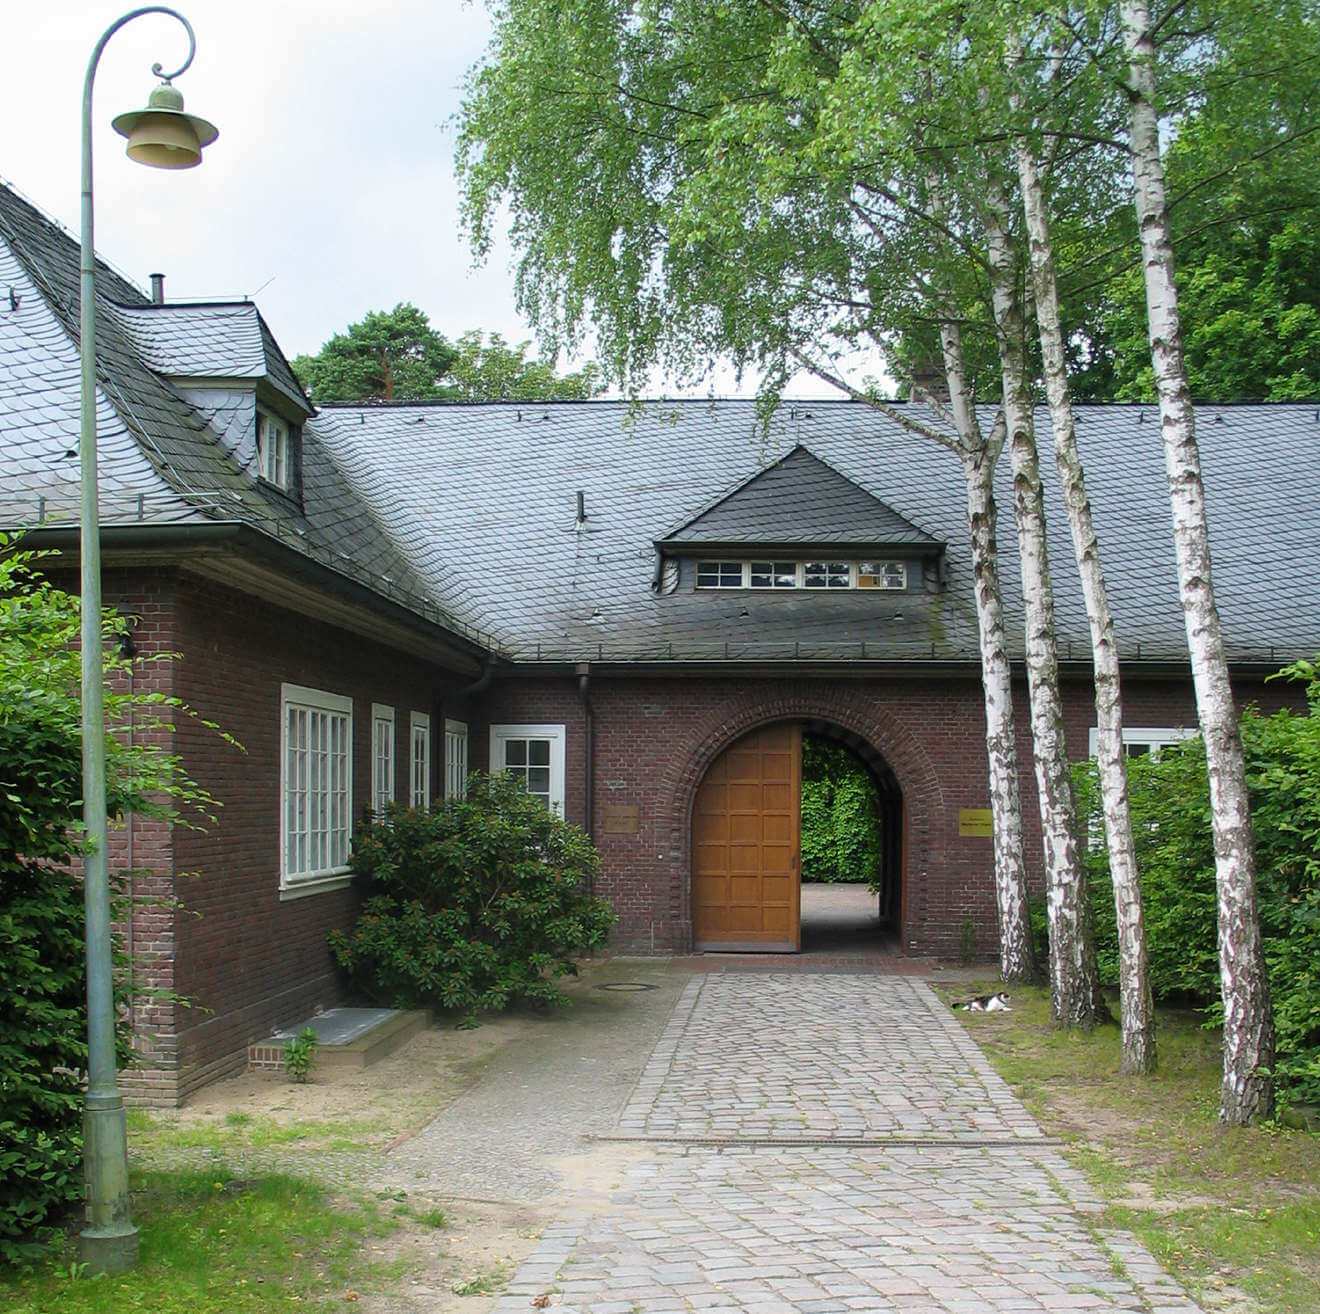 100 Jahre Mittelhof in Nikolassee: ZMO erinnert an die Geschichte eines Berliner Landhauses